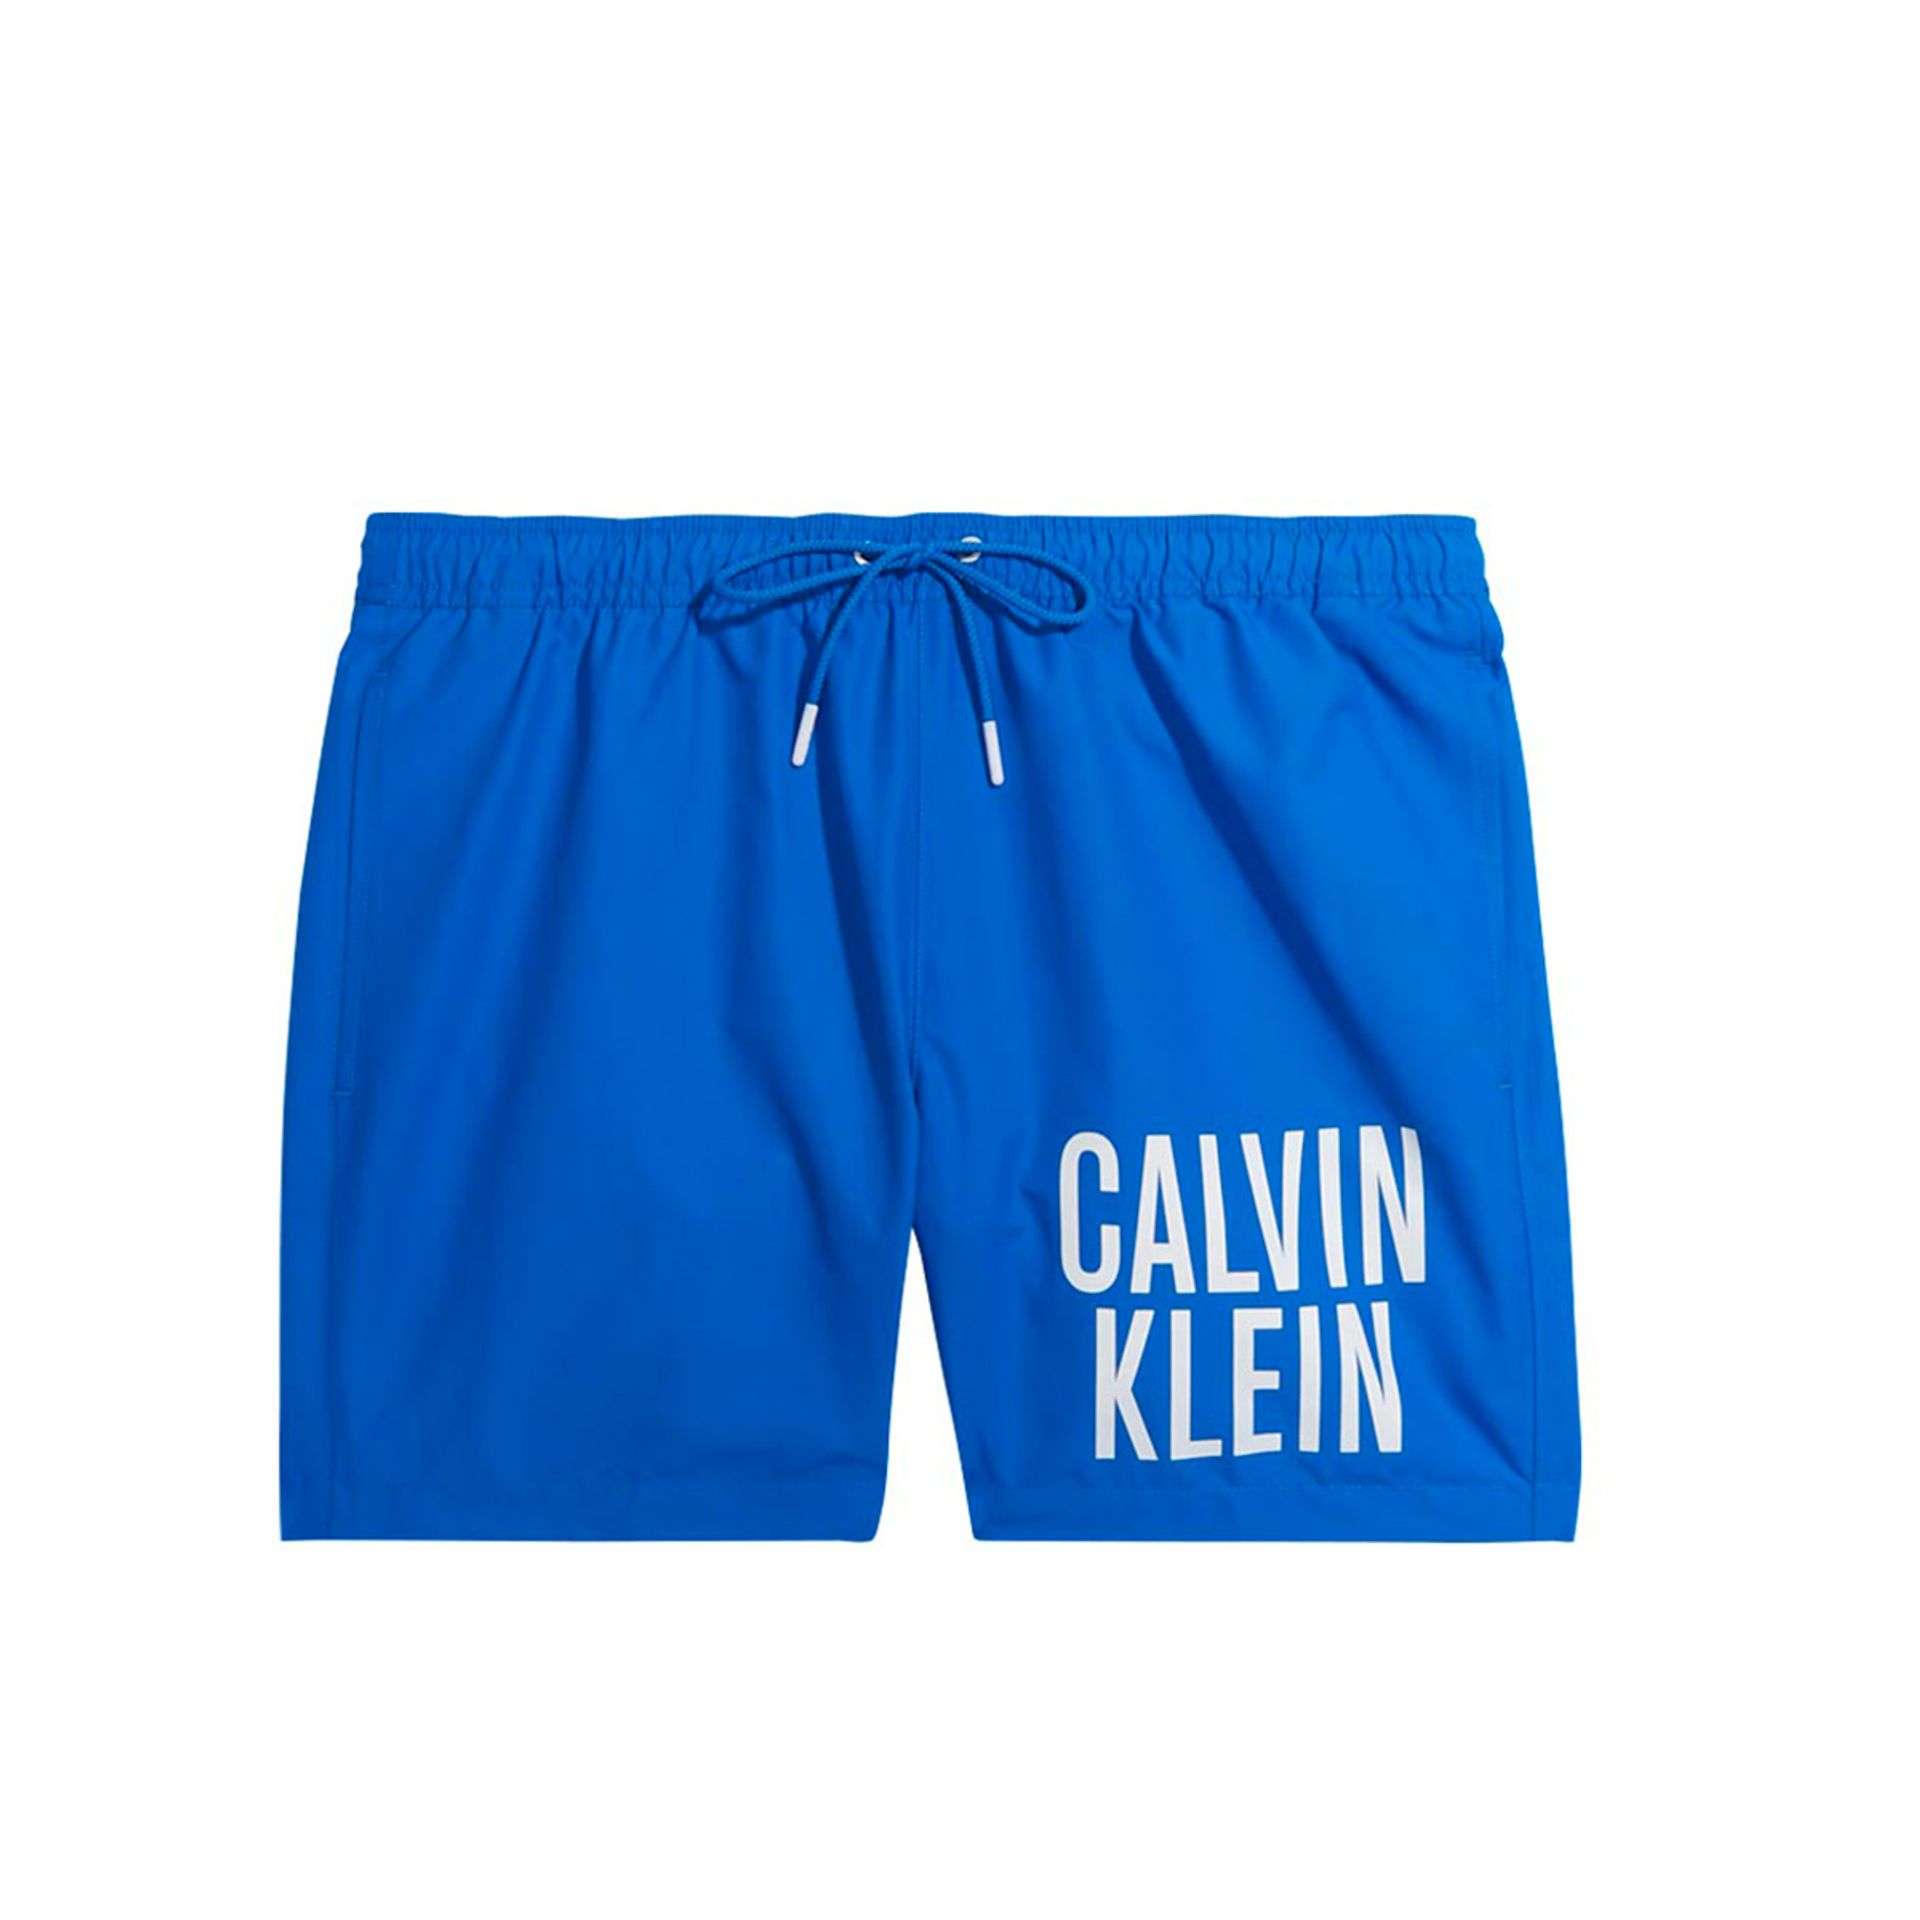 Calvin Klein Swimwear blau